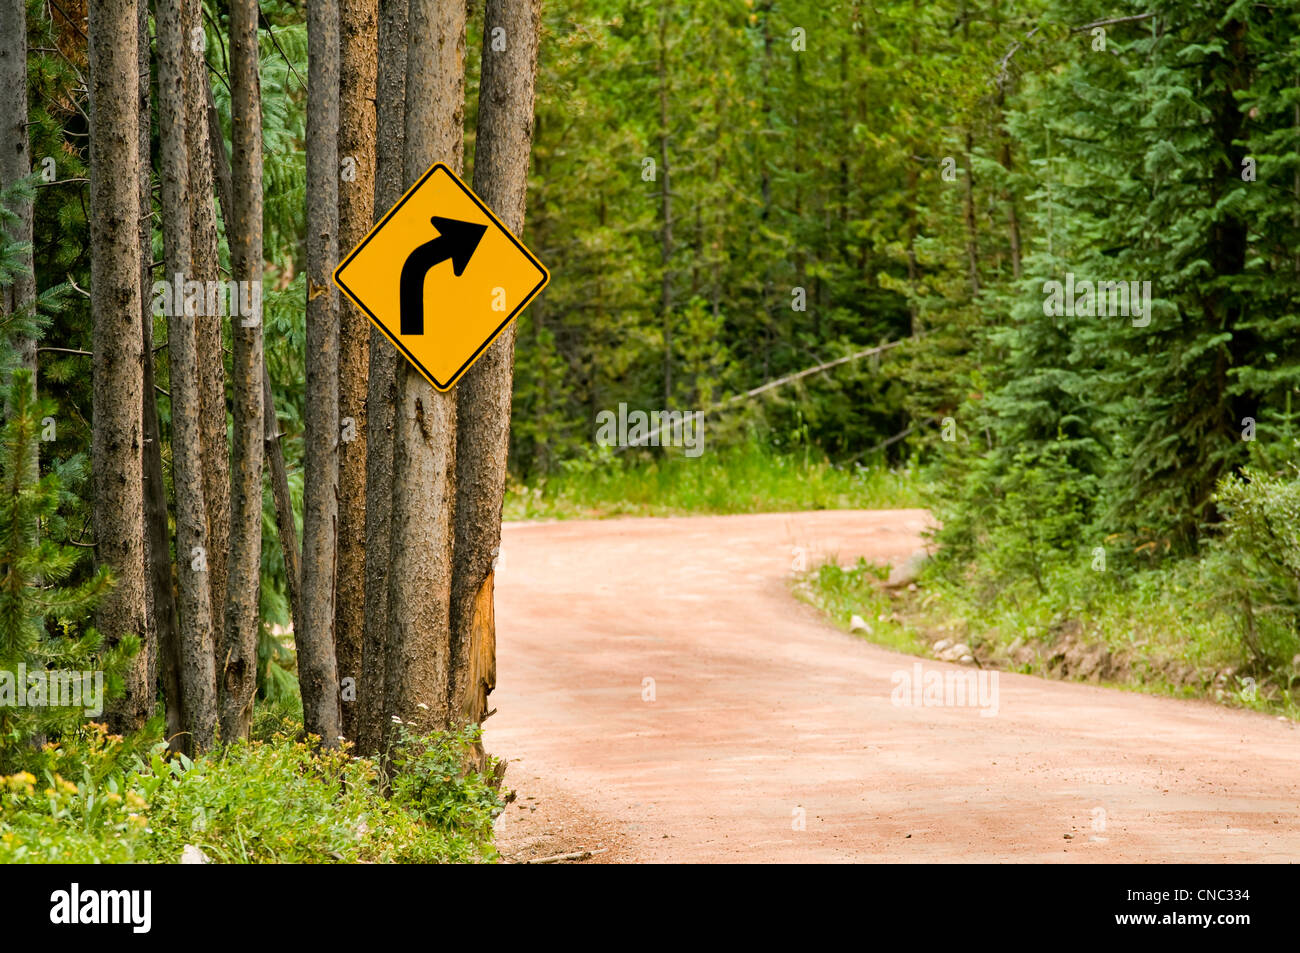 Ign strade con curve e strada nella foresta Foto Stock